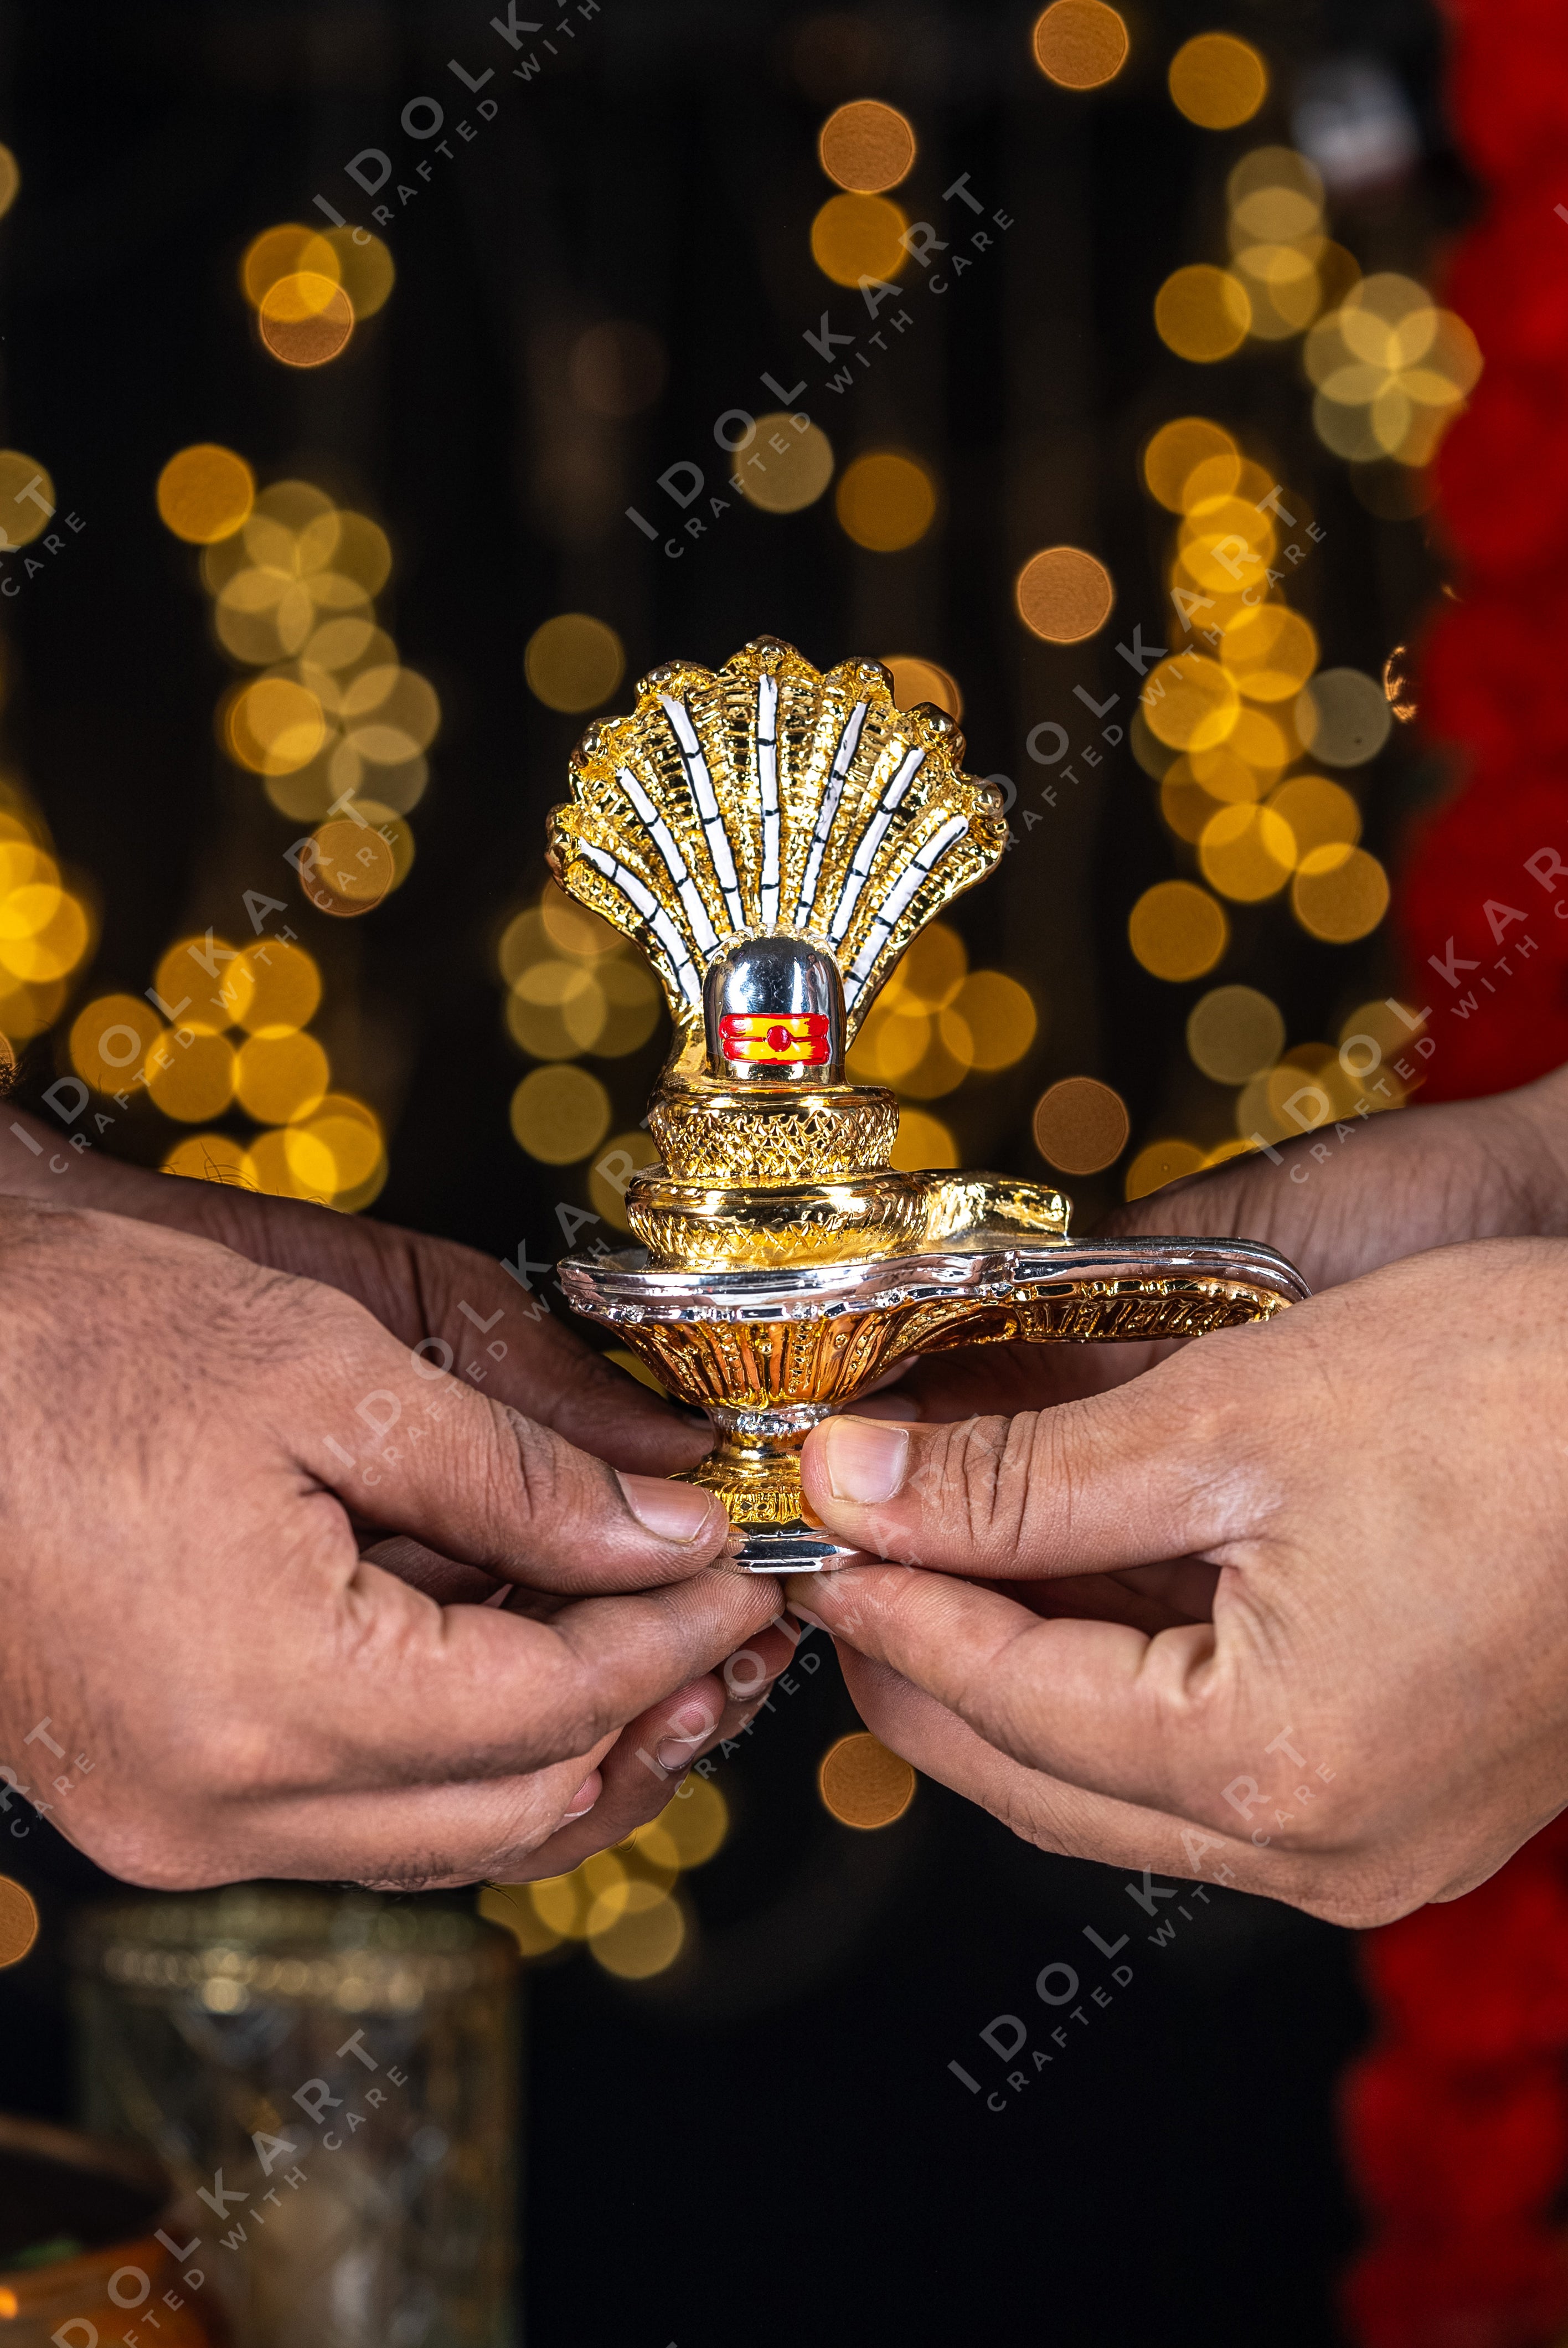 Shiva lingam idol in hand